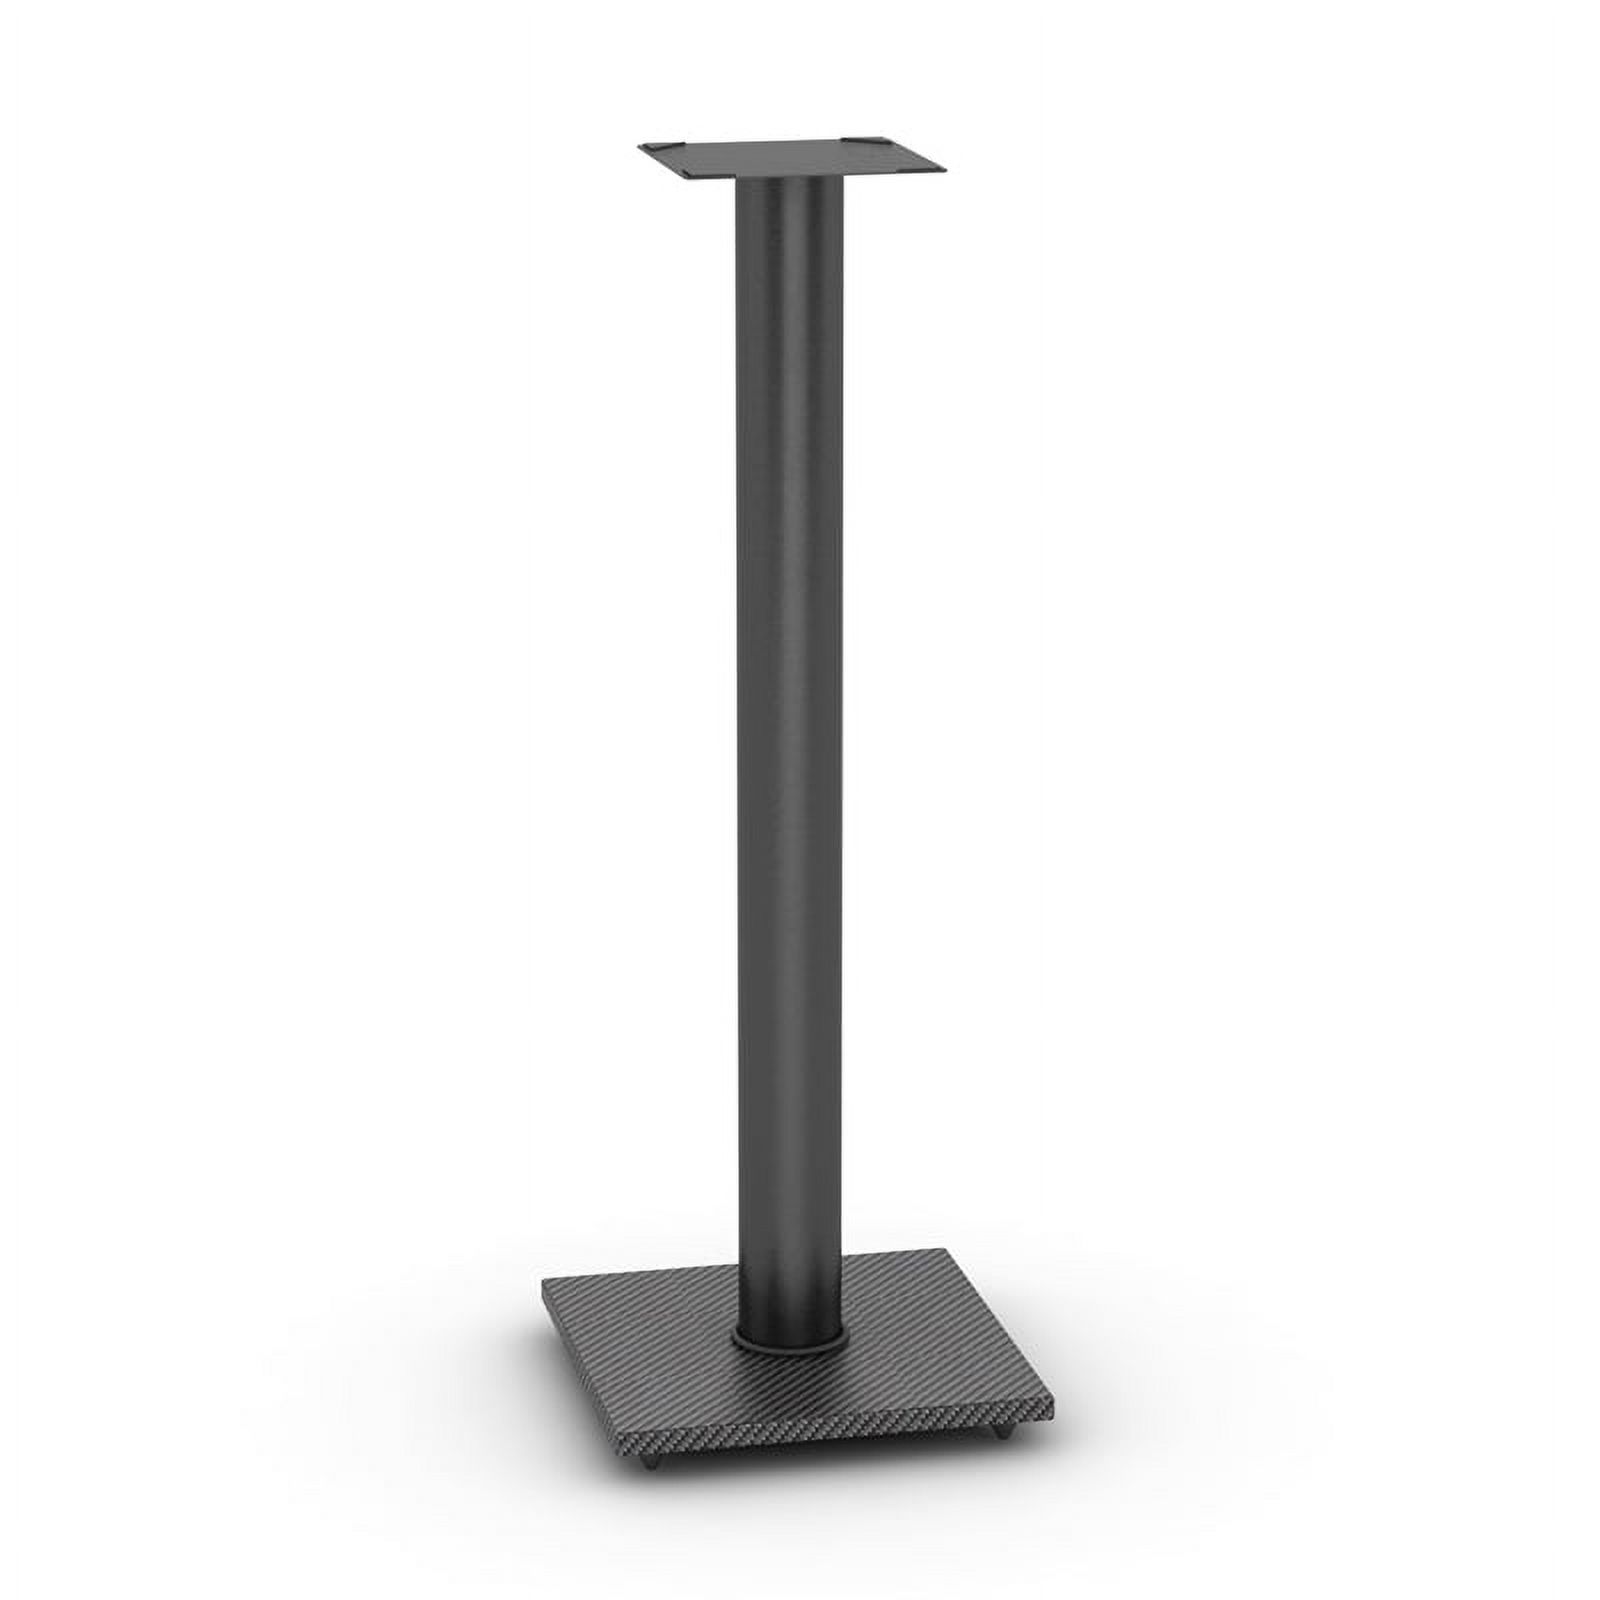 Atlantic Speaker Pedestal Stands, 10.5"W x 10.5"D x 30" H, Set of 2, Carbon Fiber Black - image 3 of 8